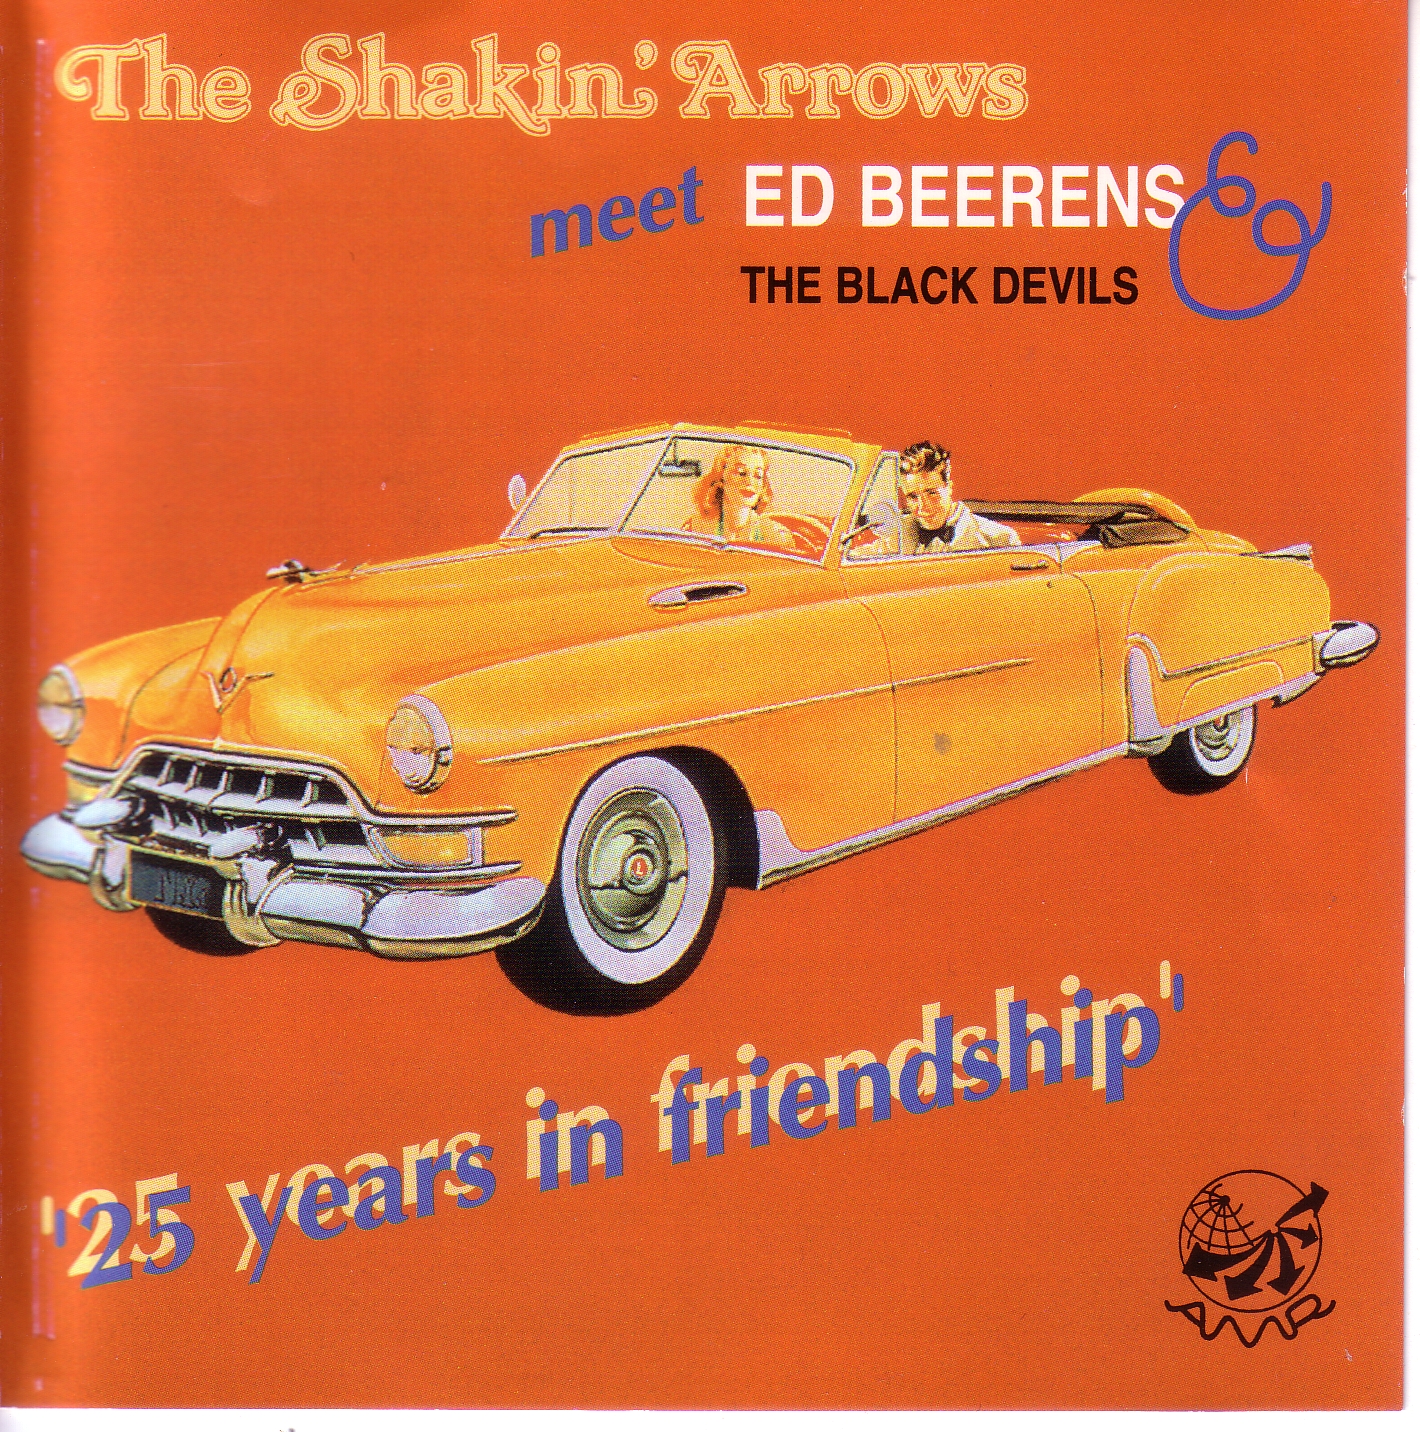 The Shakin Arrows - 25 years in friendshipRepost)